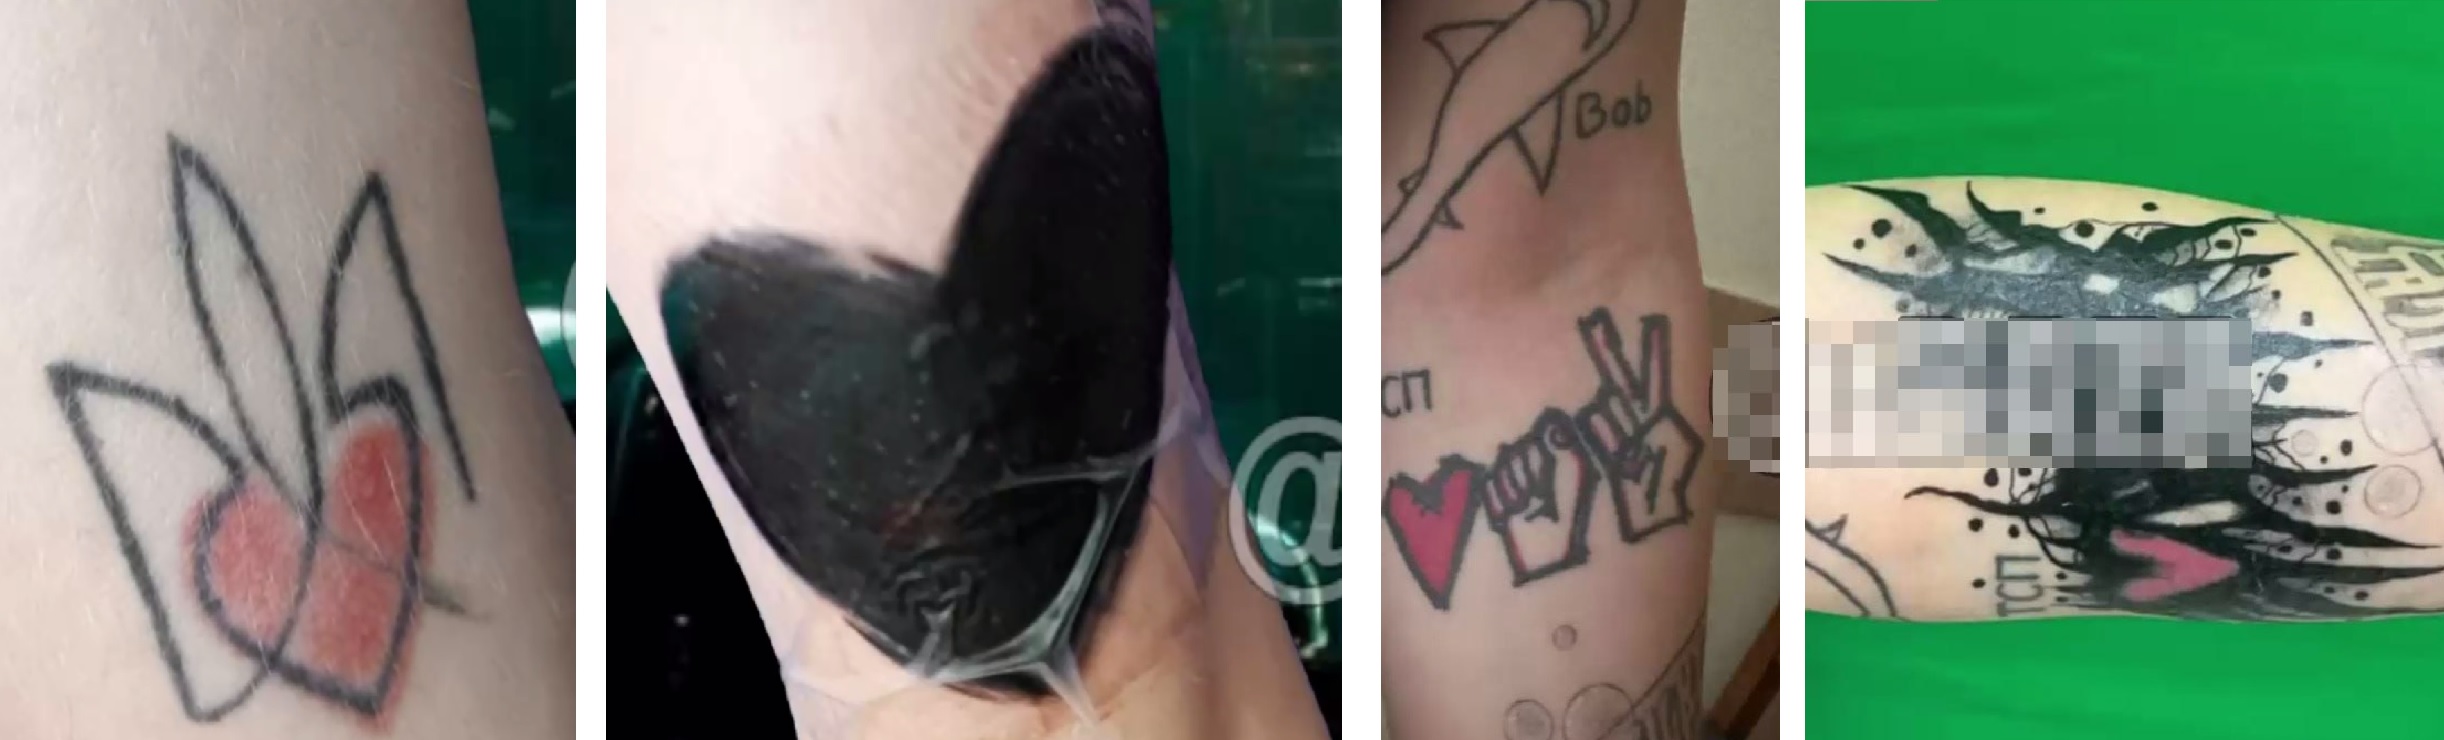 Представитель Паши Техника заявил, что рэпер перезабьет тату с нацистской символикой